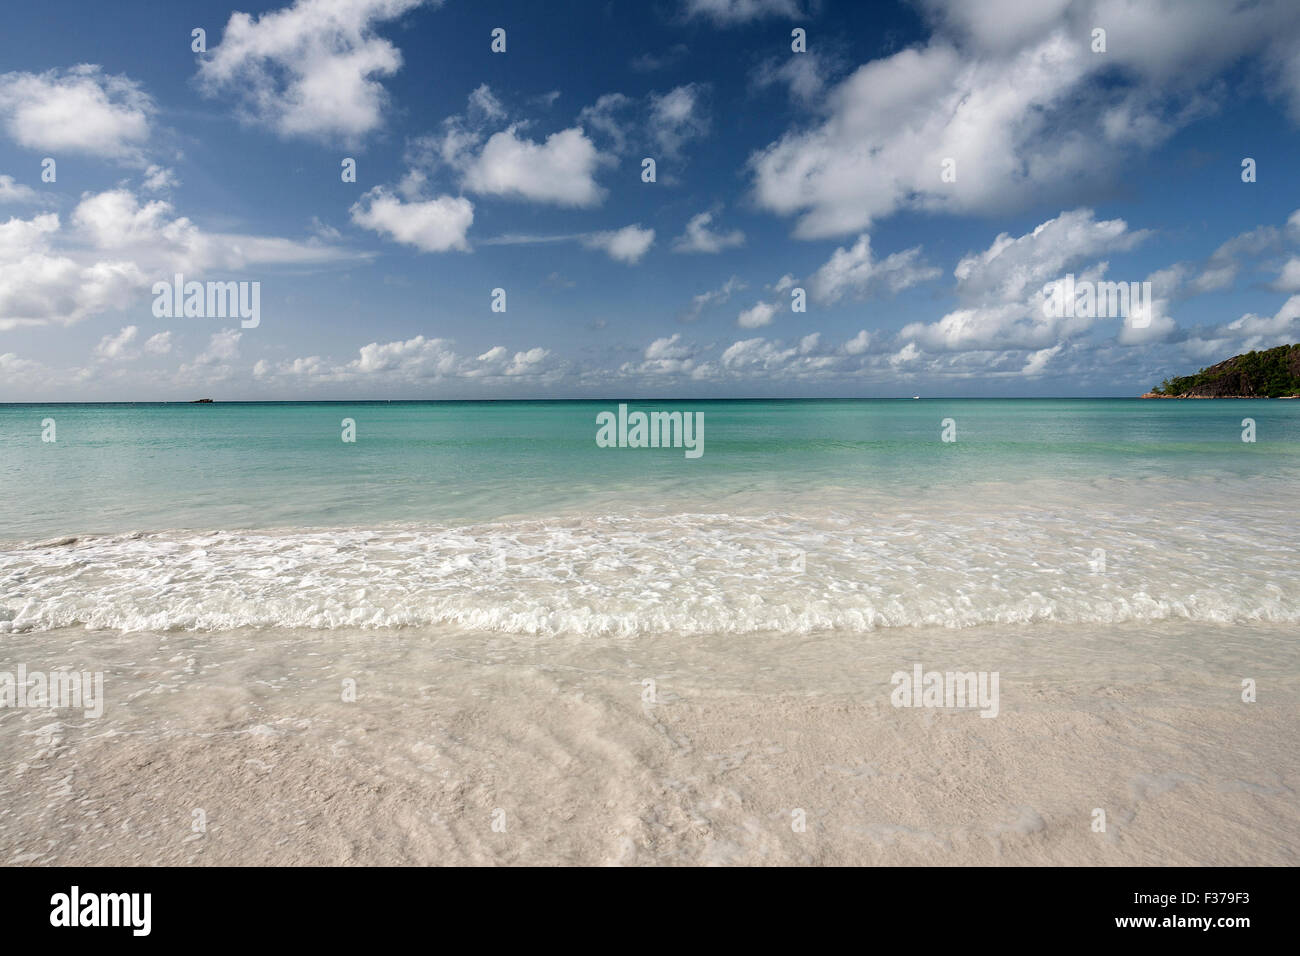 Weißen Sandstrand Anse Volbert, türkisfarbenes Wasser, blauer Himmel mit Wolken, Indischer Ozean, Insel Praslin, Seychellen Stockfoto